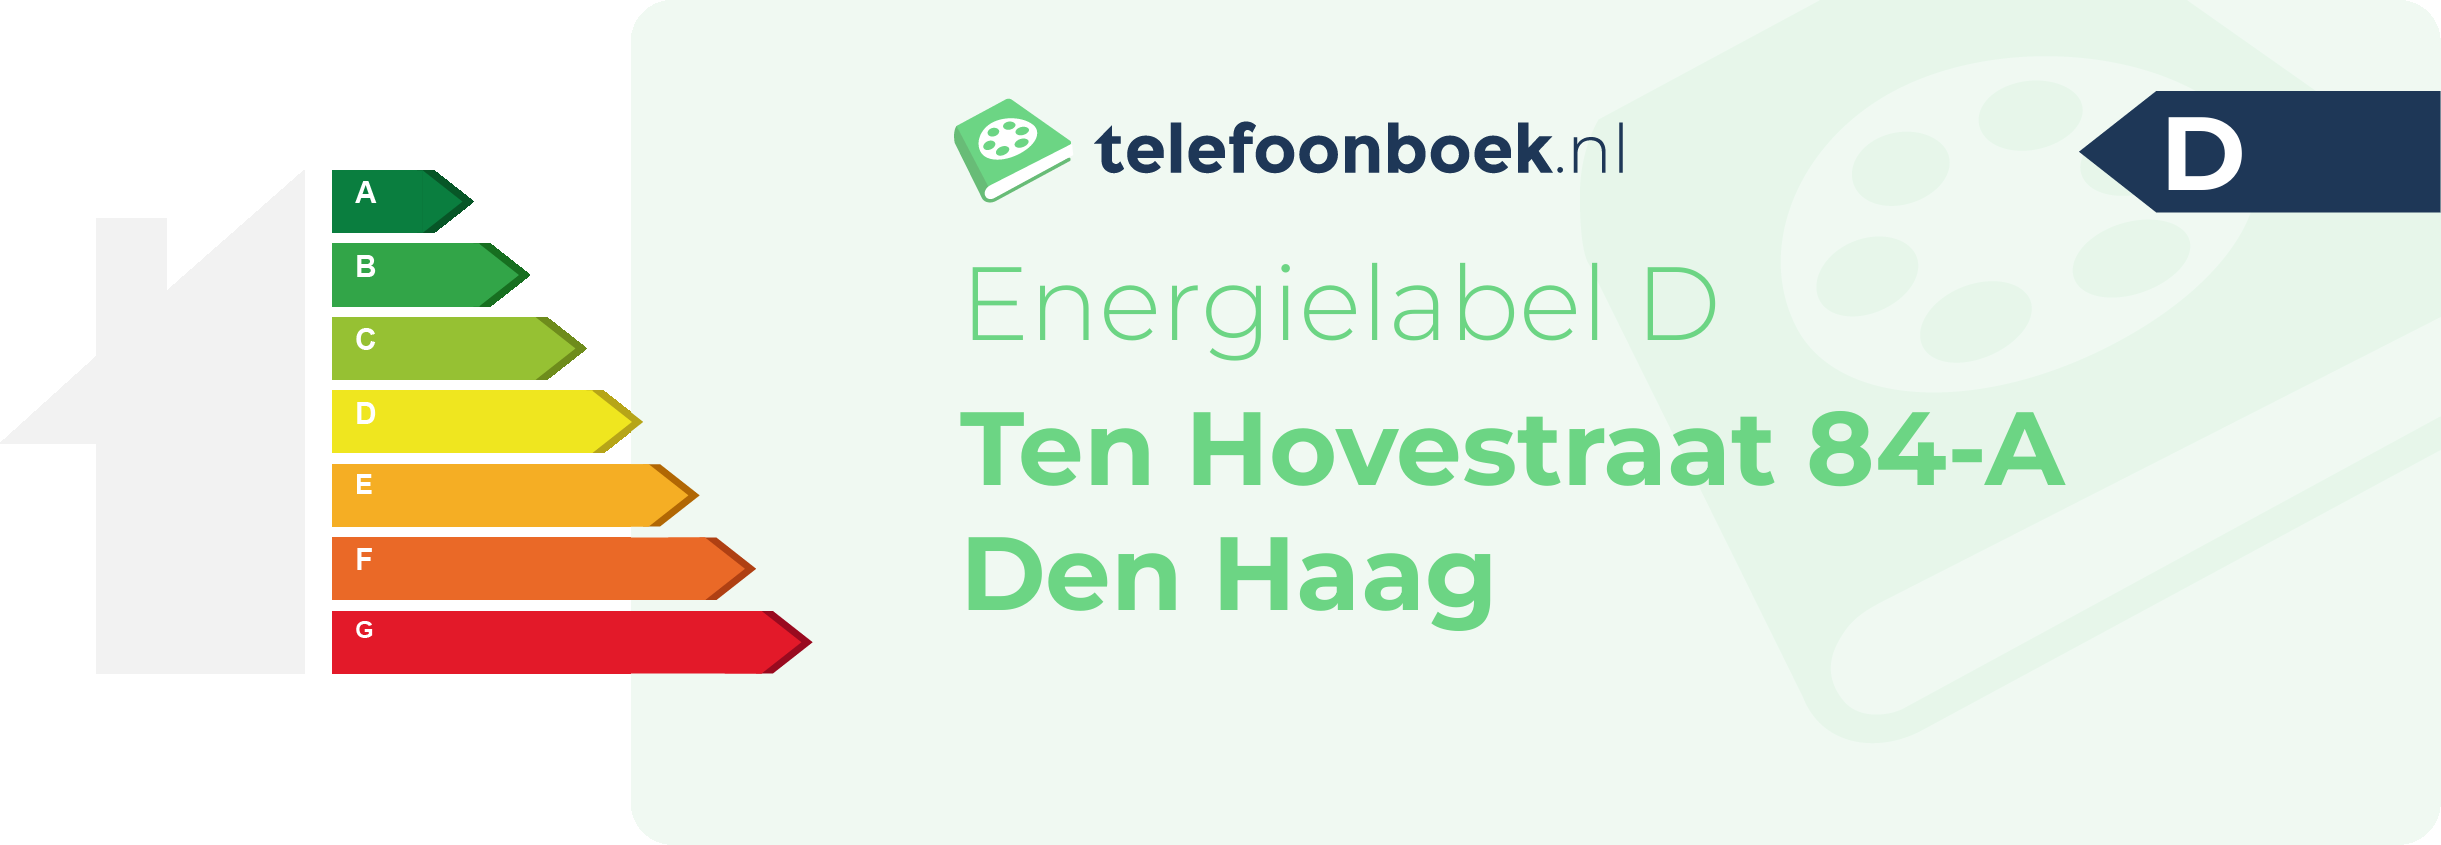 Energielabel Ten Hovestraat 84-A Den Haag